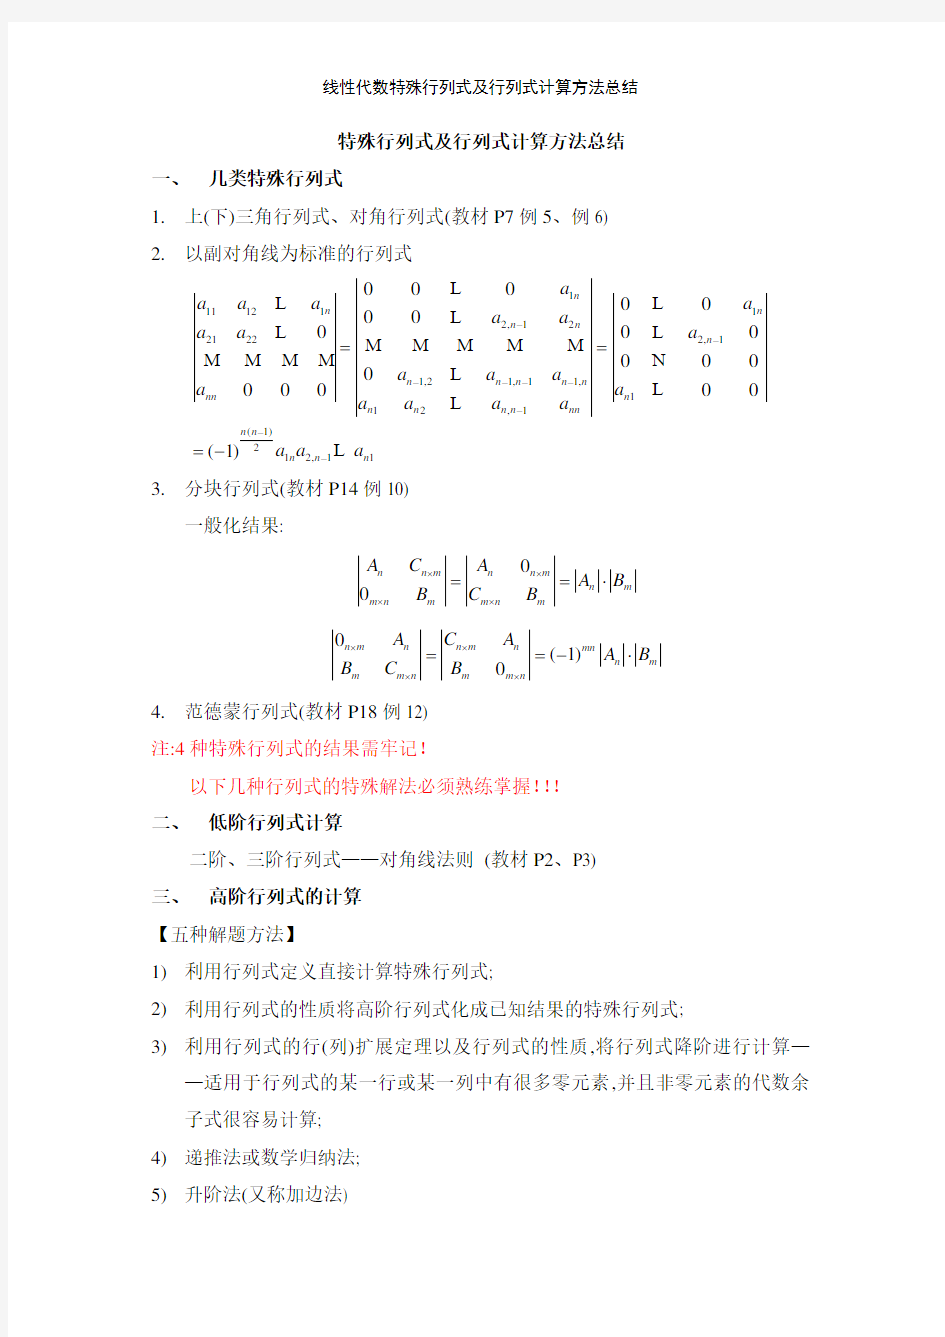 线性代数特殊行列式及行列式计算方法总结